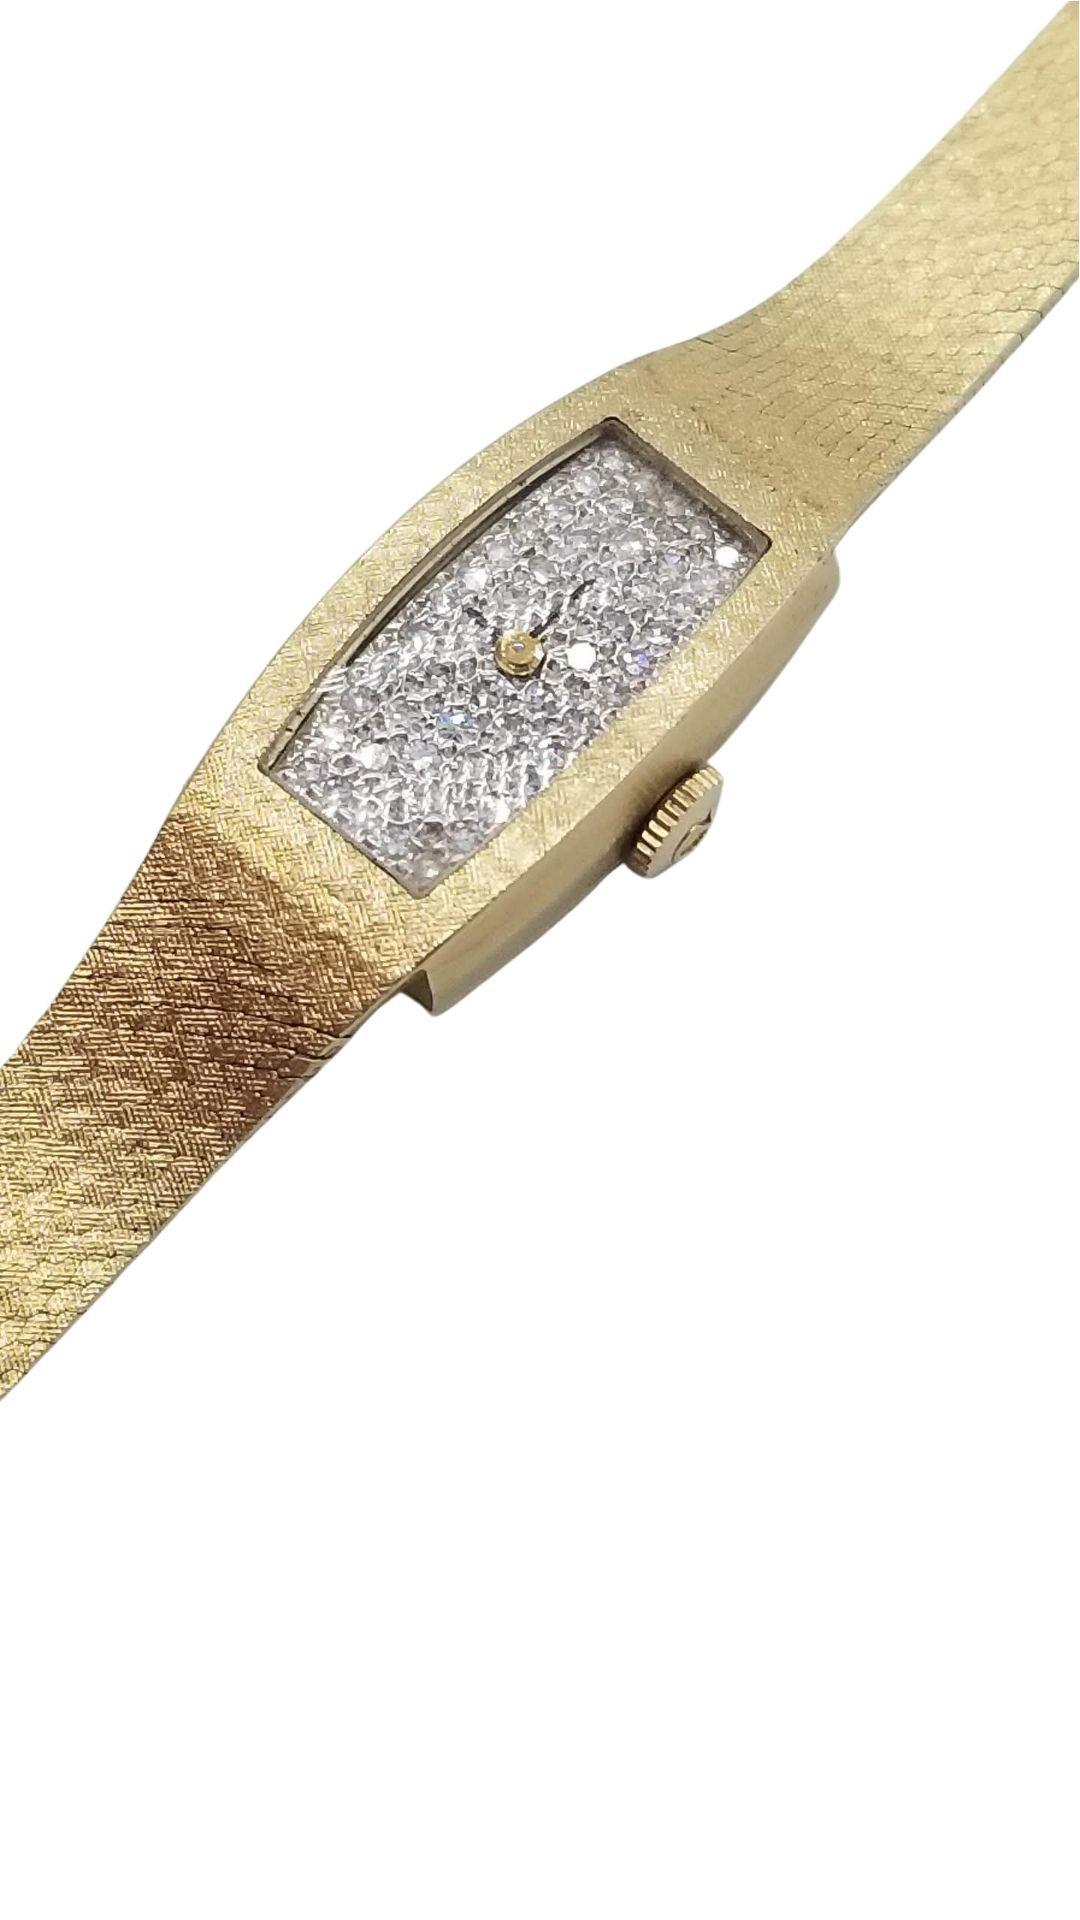 Vintage 1960 Omega Damenarmbanduhr aus 14 Karat Gold mit einem diamantbesetzten Zifferblatt mit über 20 Diamanten von 1 Karat und einem Handaufzugswerk. Das Uhrwerk wurde gewartet und hält die Zeit gut. Die Uhr ist 7,5 